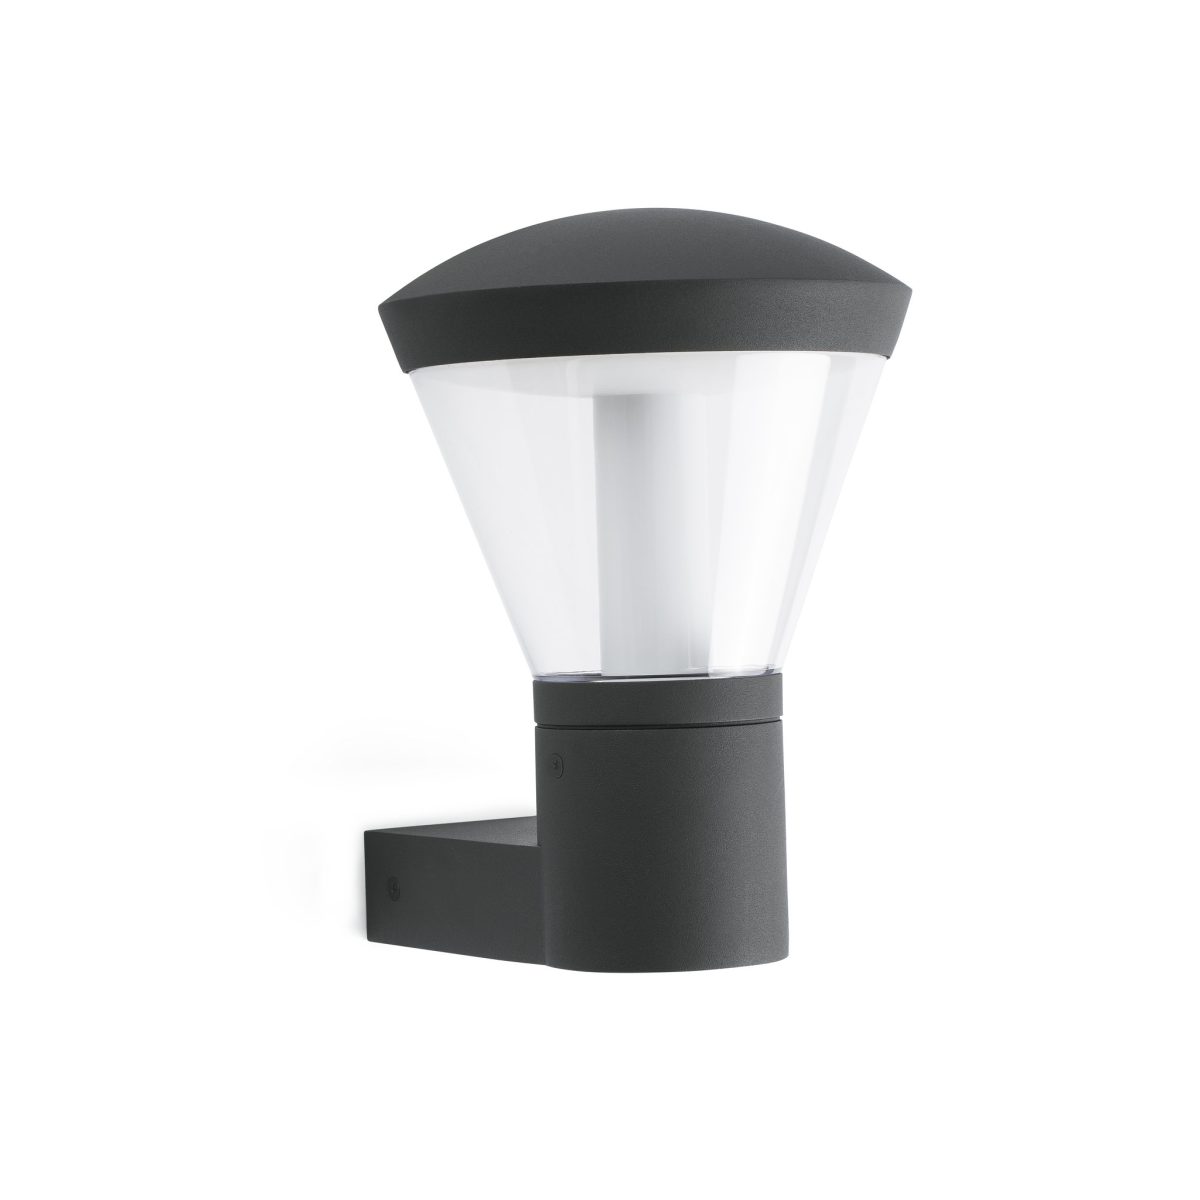 SHELBY LED Aplique de Faro. Medidas: L 190 x A 270 x F 240 mm. Color: Gris